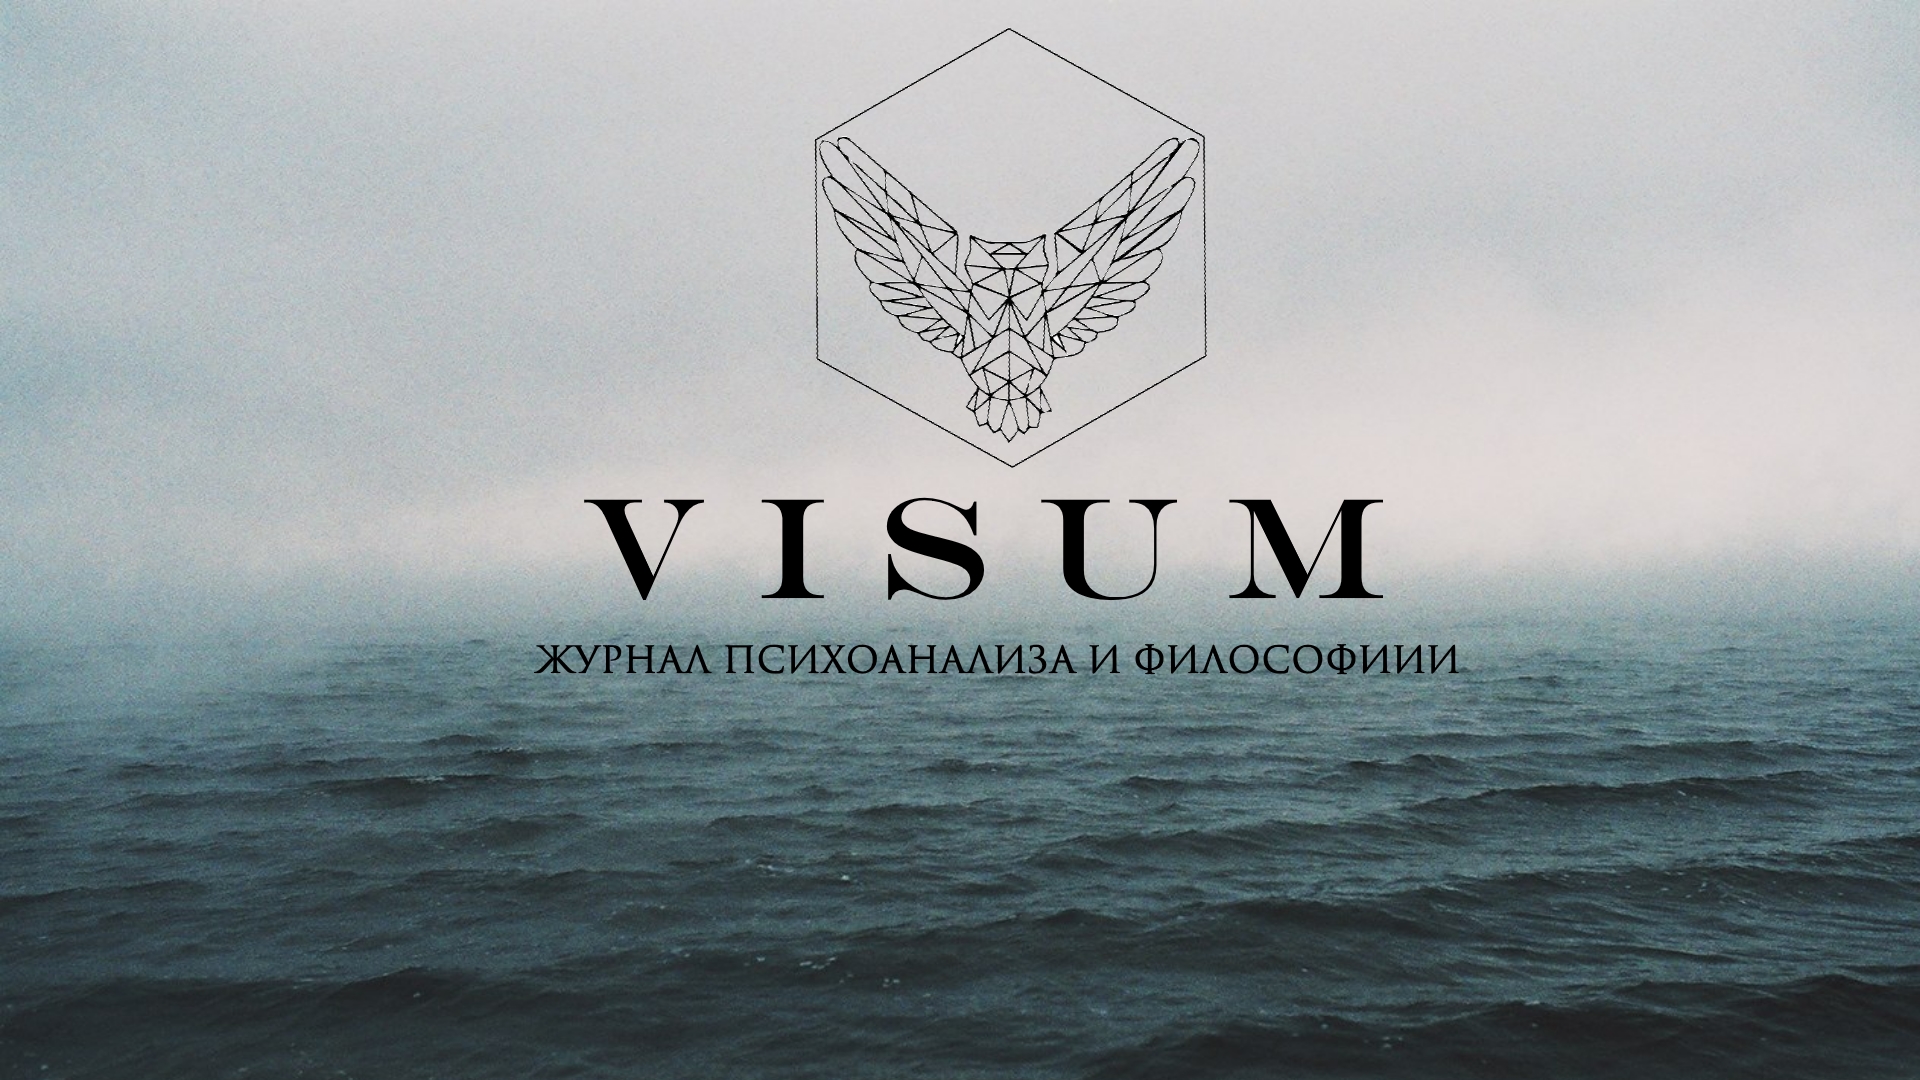 Журнал "Visum" выпуск №2